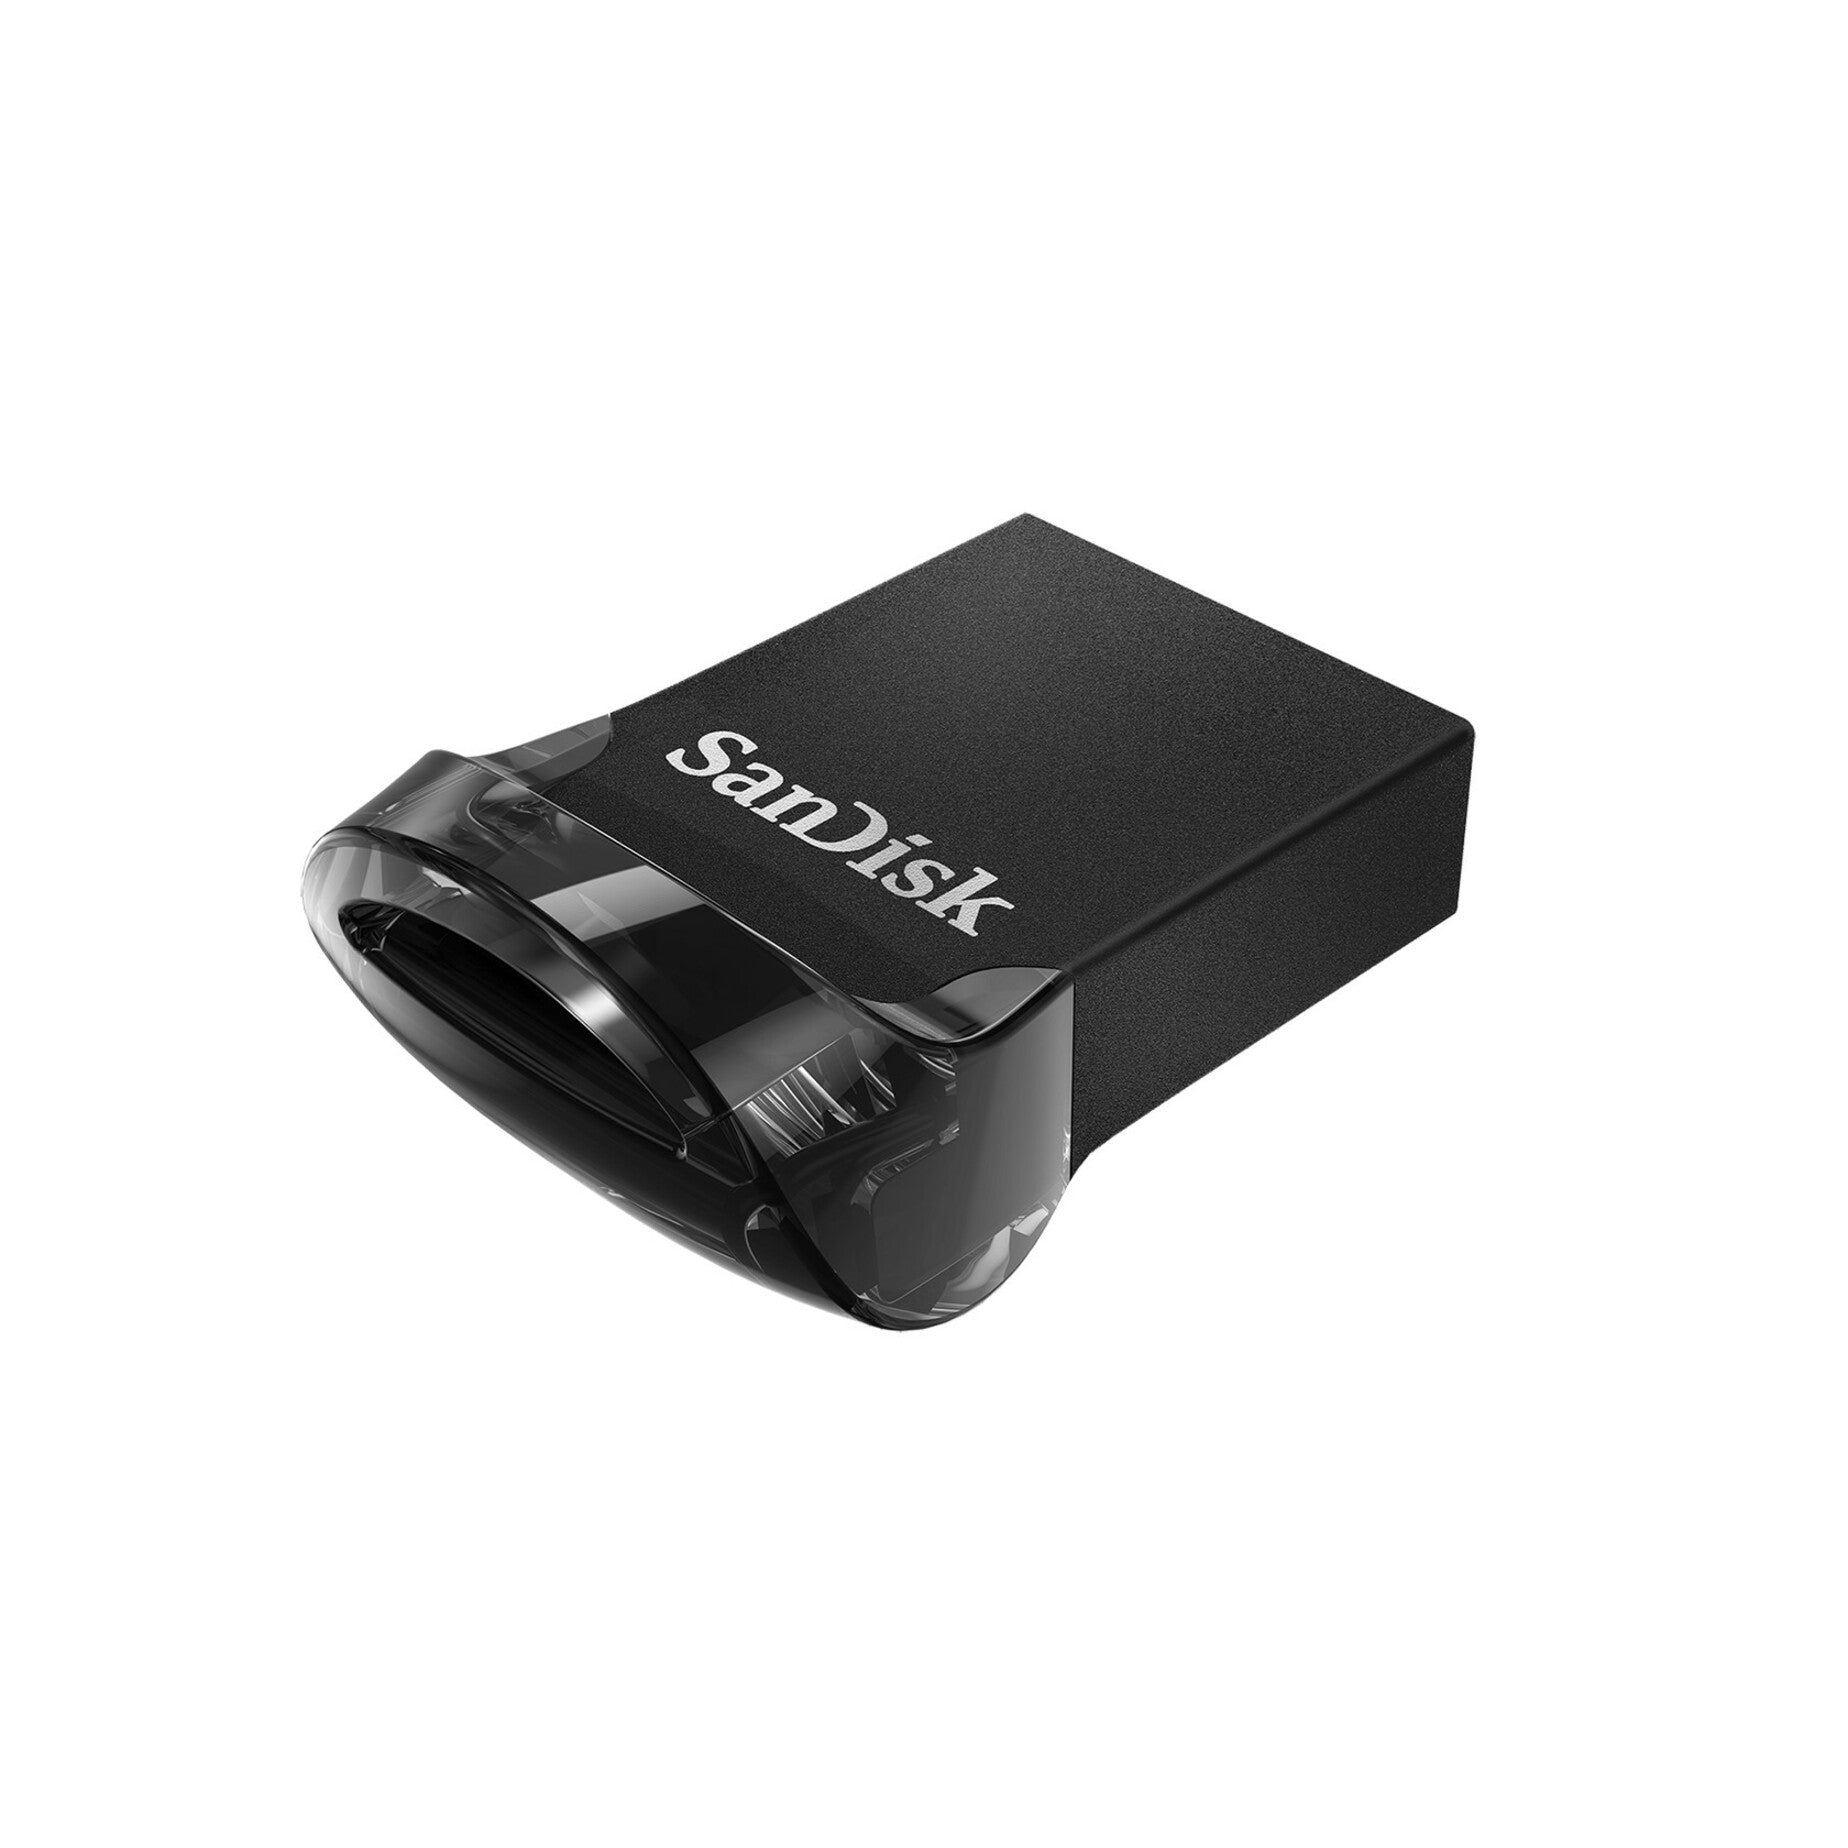 サンディスク SDCZ430-128G-A46 ウルトラ フィット USB 3.1 フラッシュドライブ 128GB、高速データ転送とコンパクトデザイン